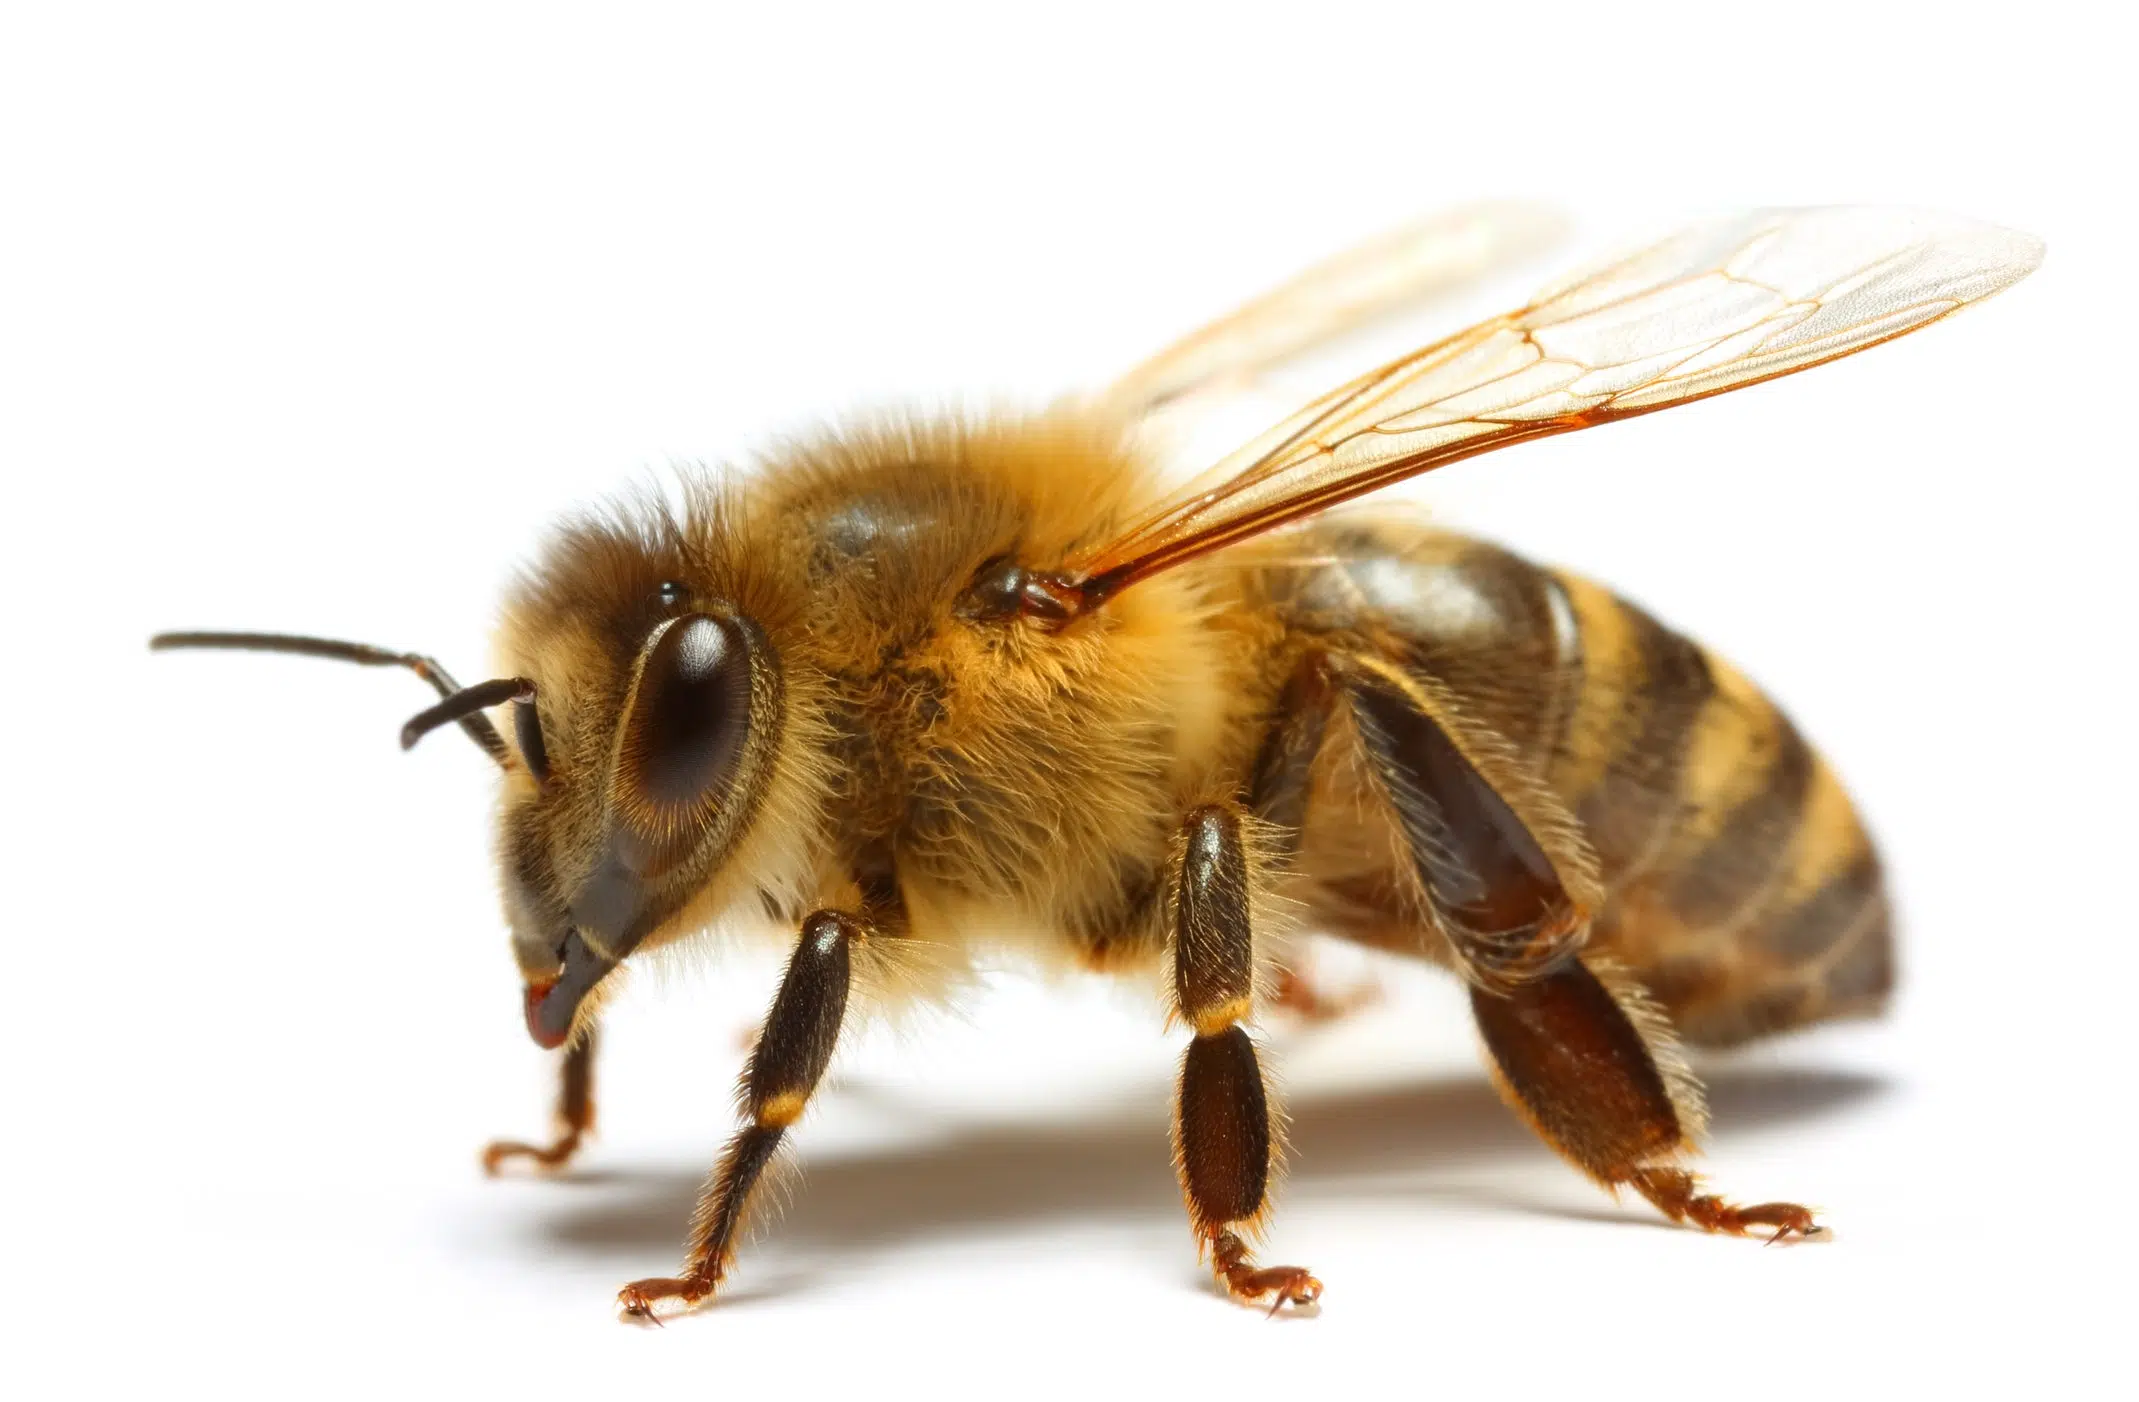 The honey bee